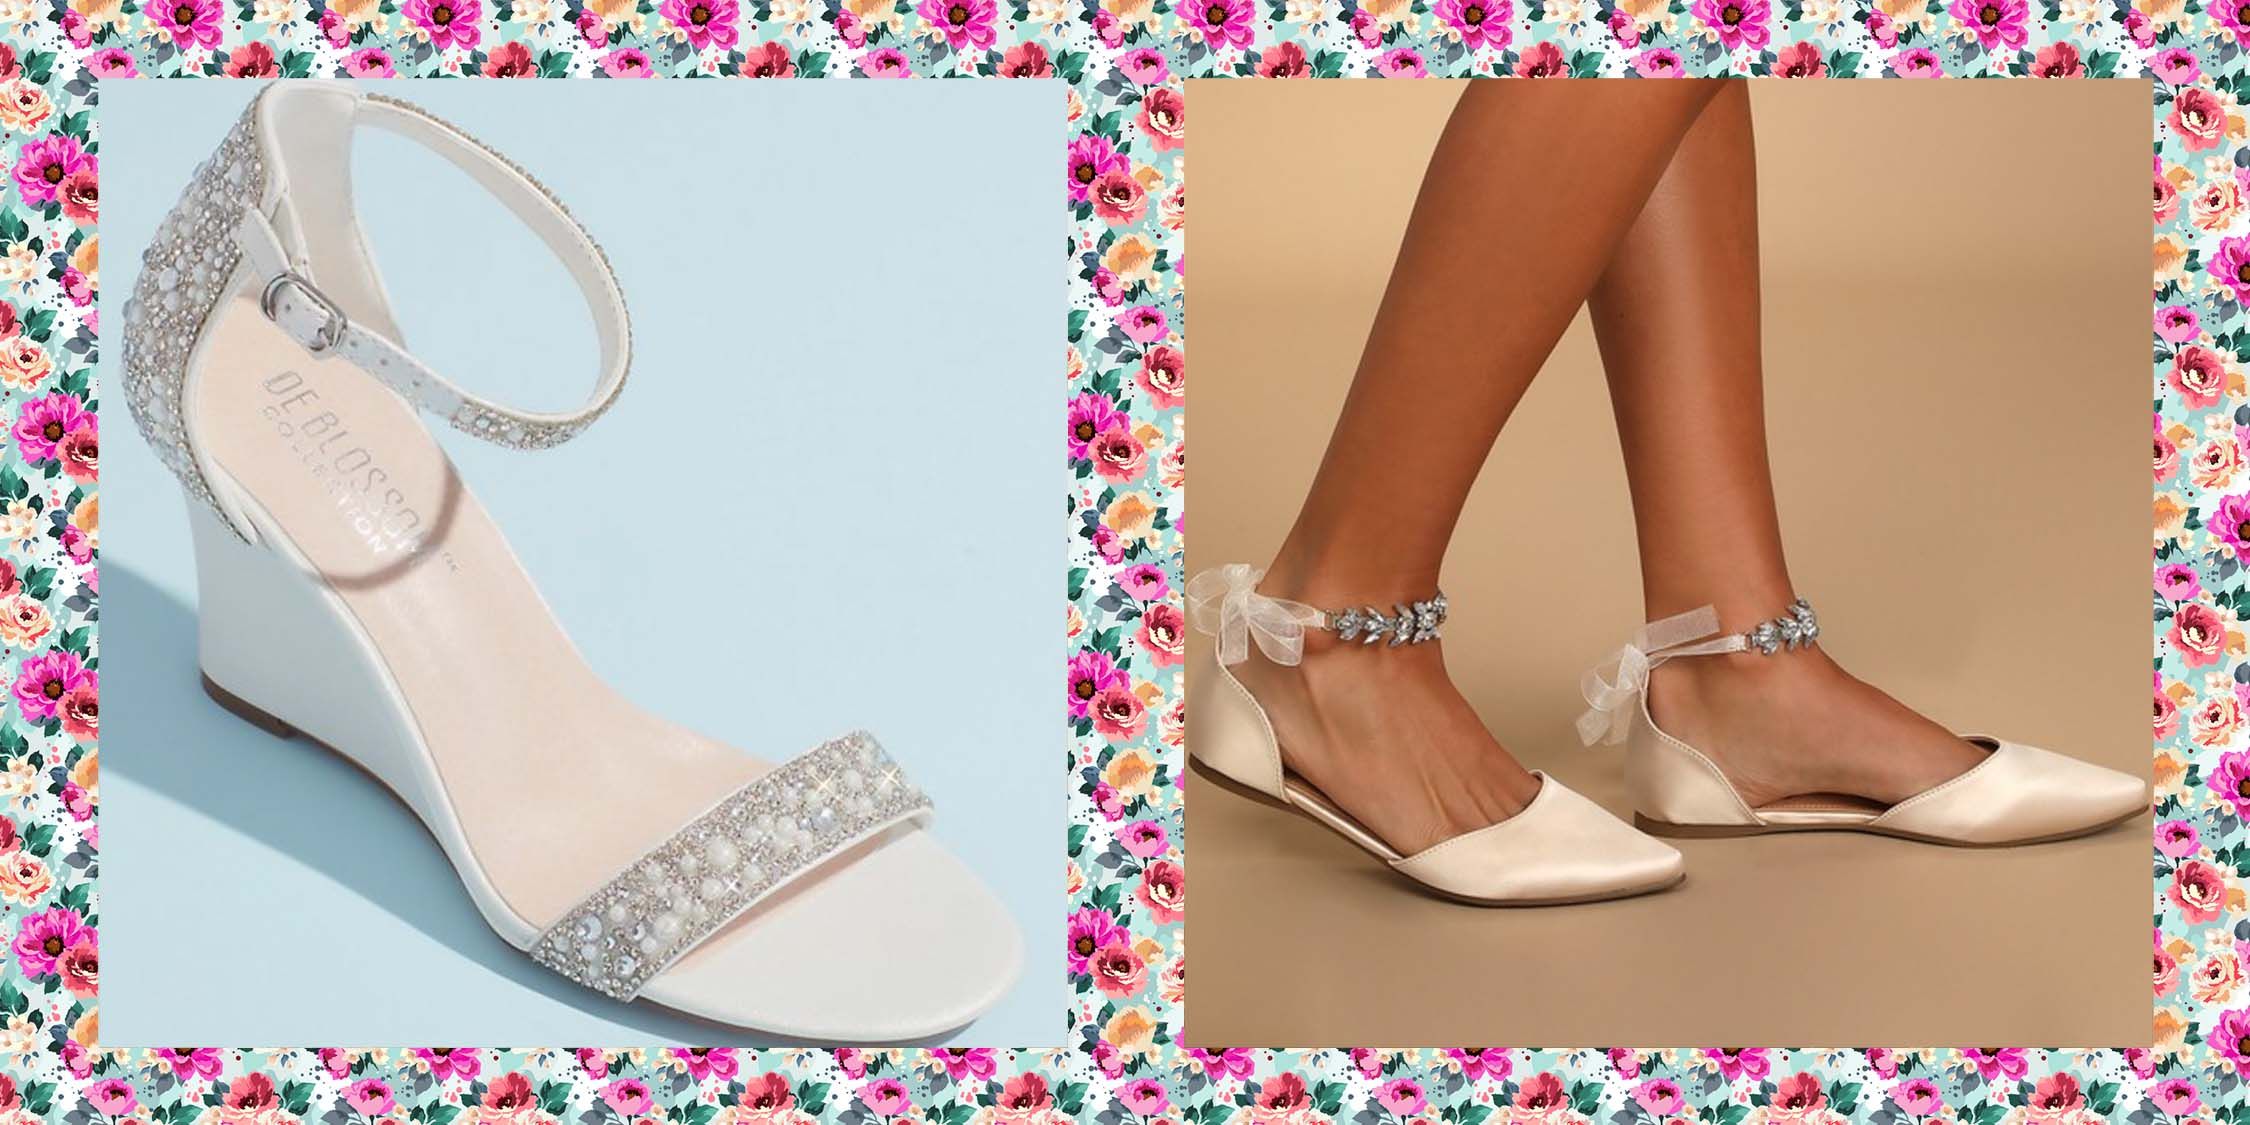 White Block-Heel Sandals for Women | Nordstrom